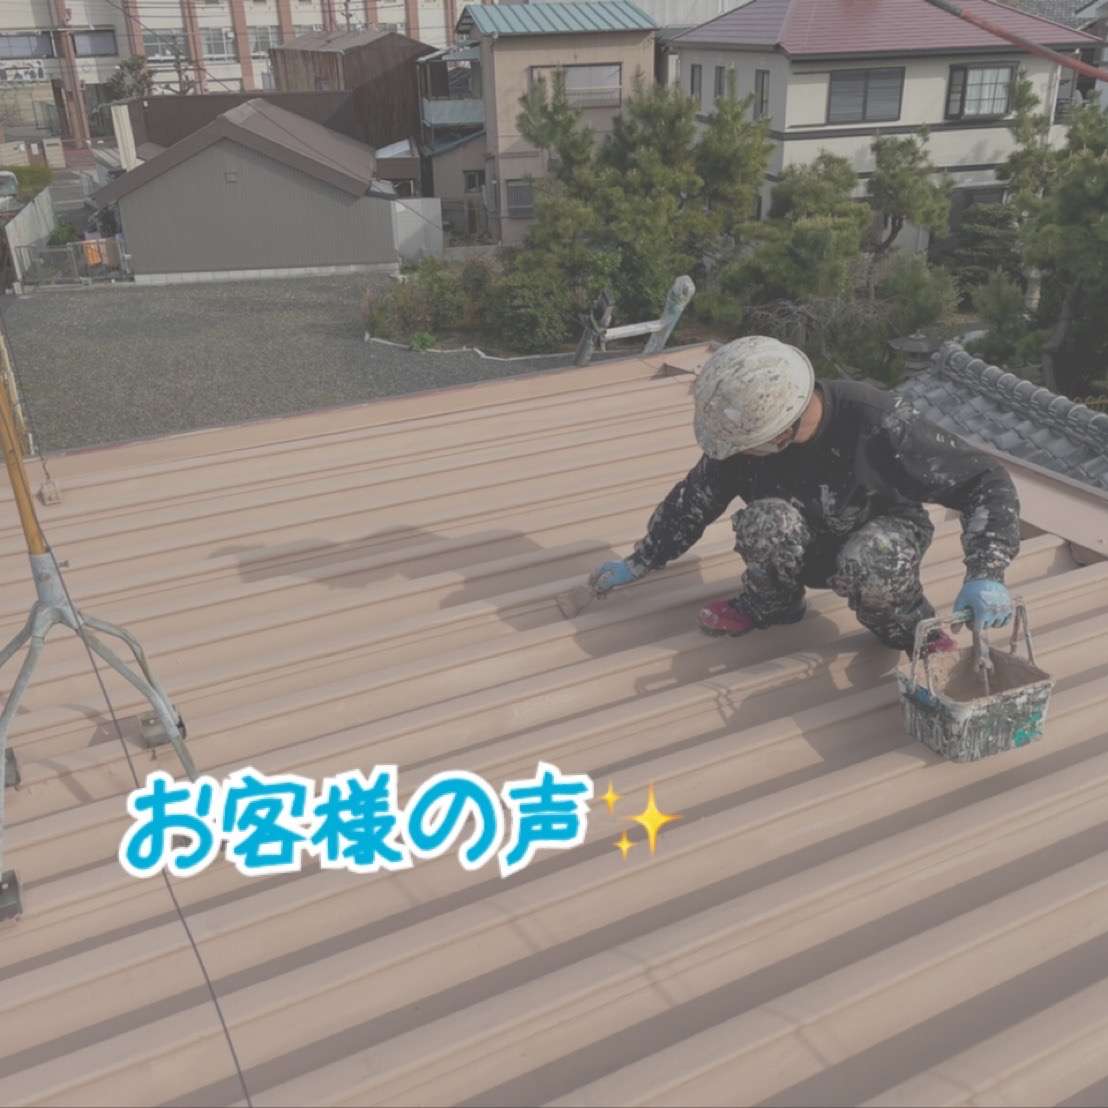 折半屋根断熱塗装工事をさせていただきました名古屋市千種区M様から嬉しい口コミを頂きましたのでご紹介させていただきます✨